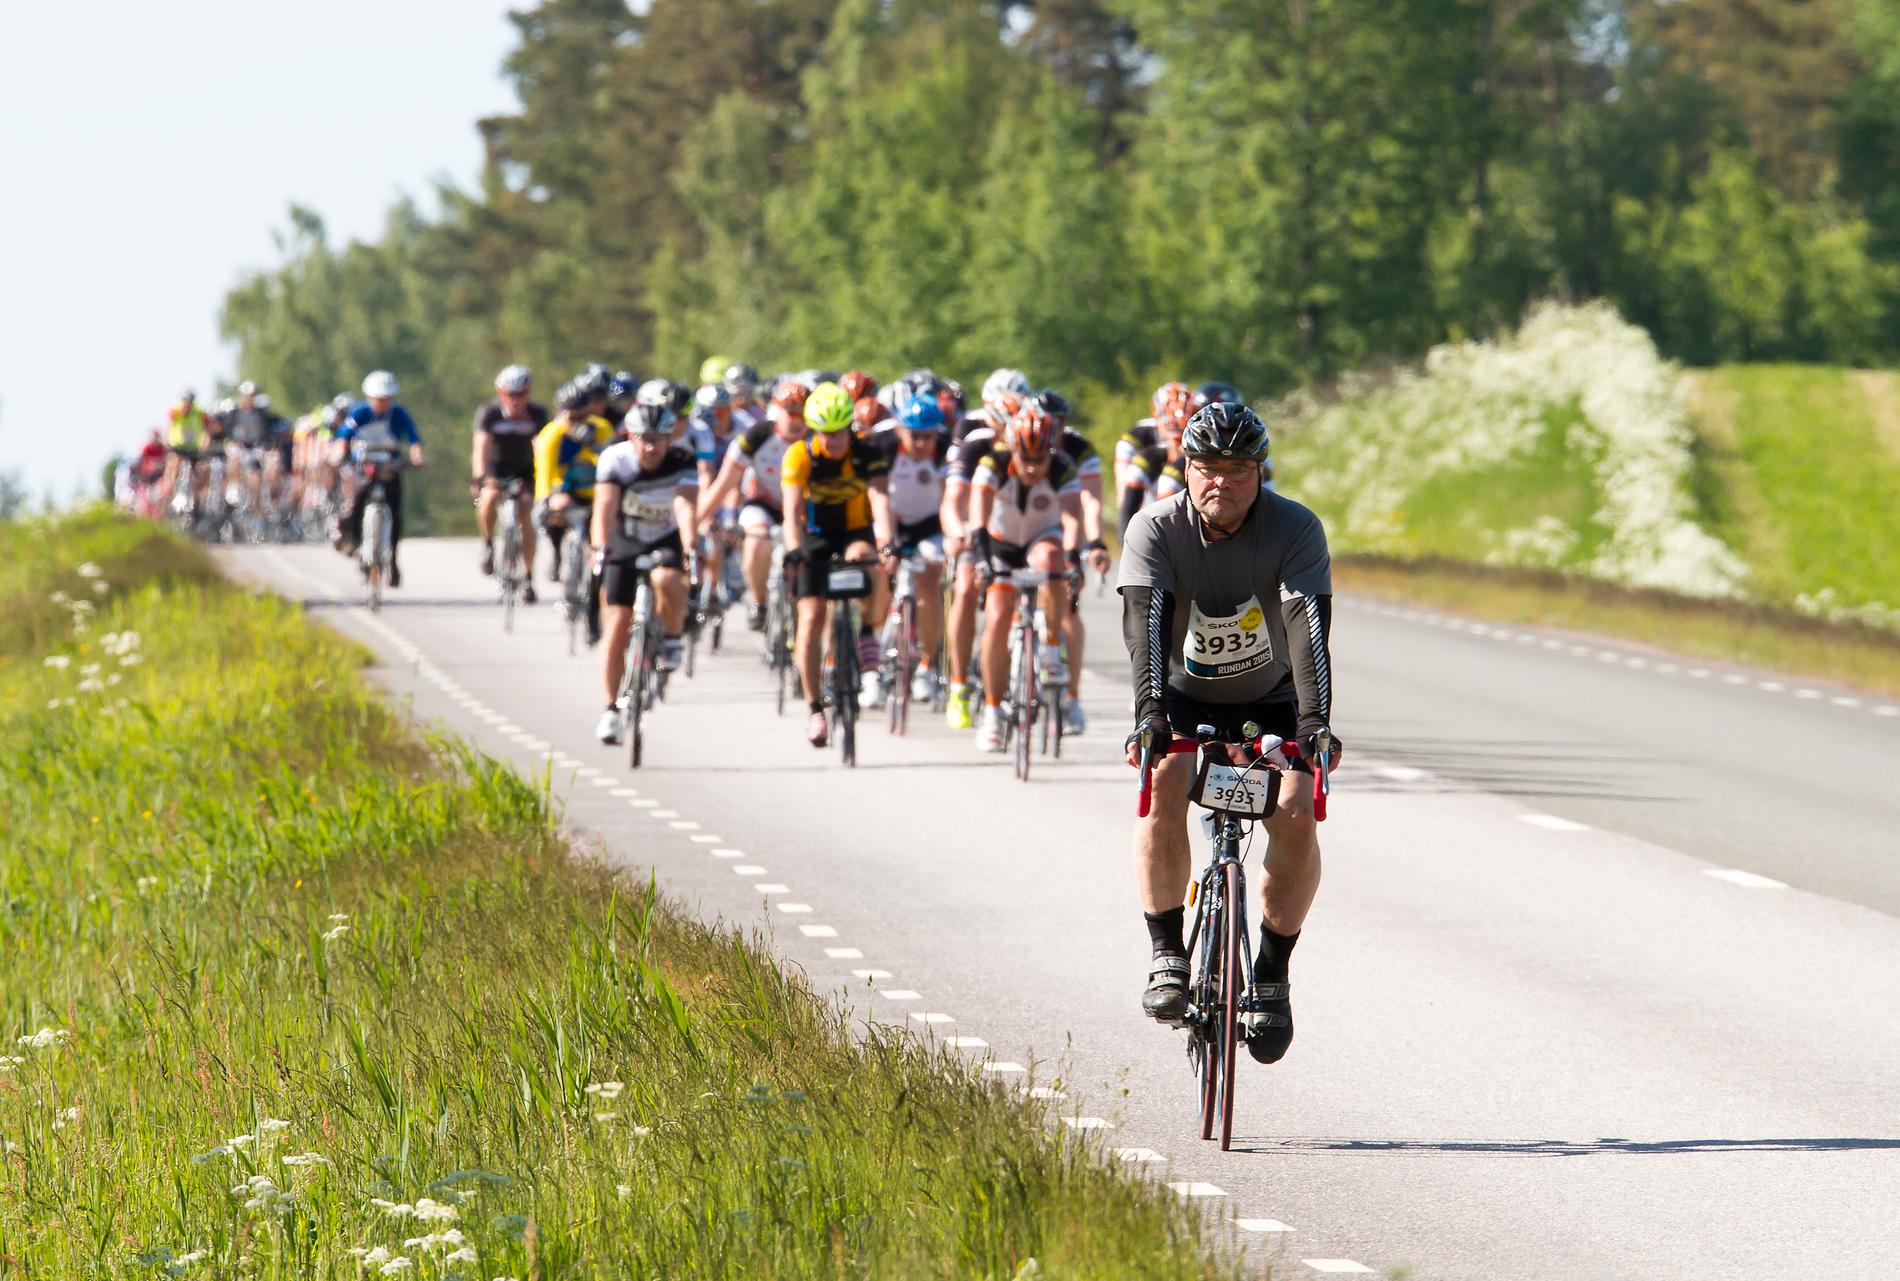 Vätternrundan avslutades på lördagen, med ca 19 000 cyklister som startade i loppet. Oddbjörn Presthaug, Smålandsstenar, utanför Hjo.